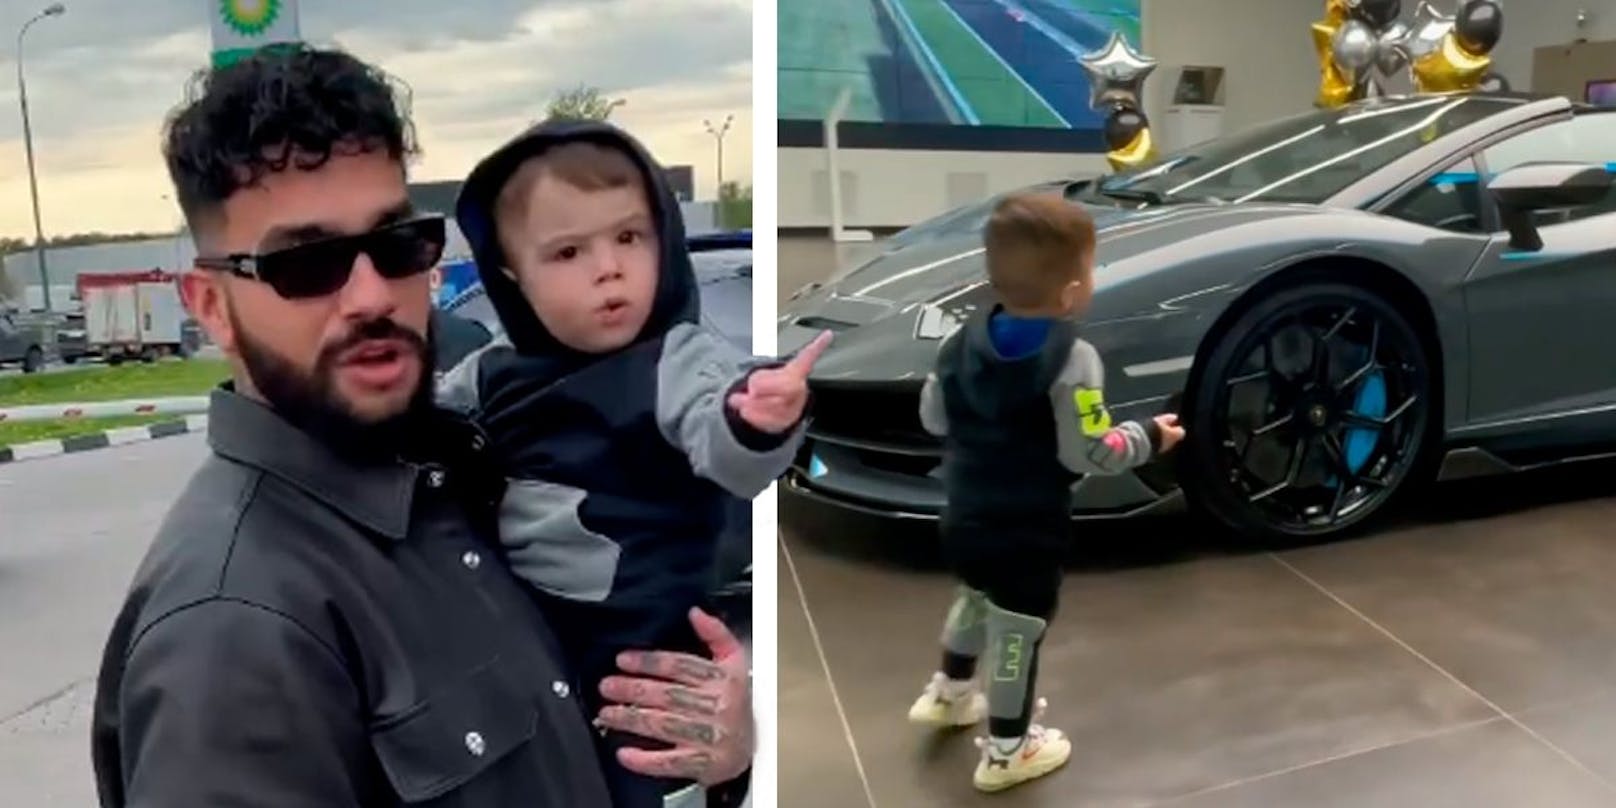 Rapper Timati schenkt seinem Sohn einen Lamborghini – für später.